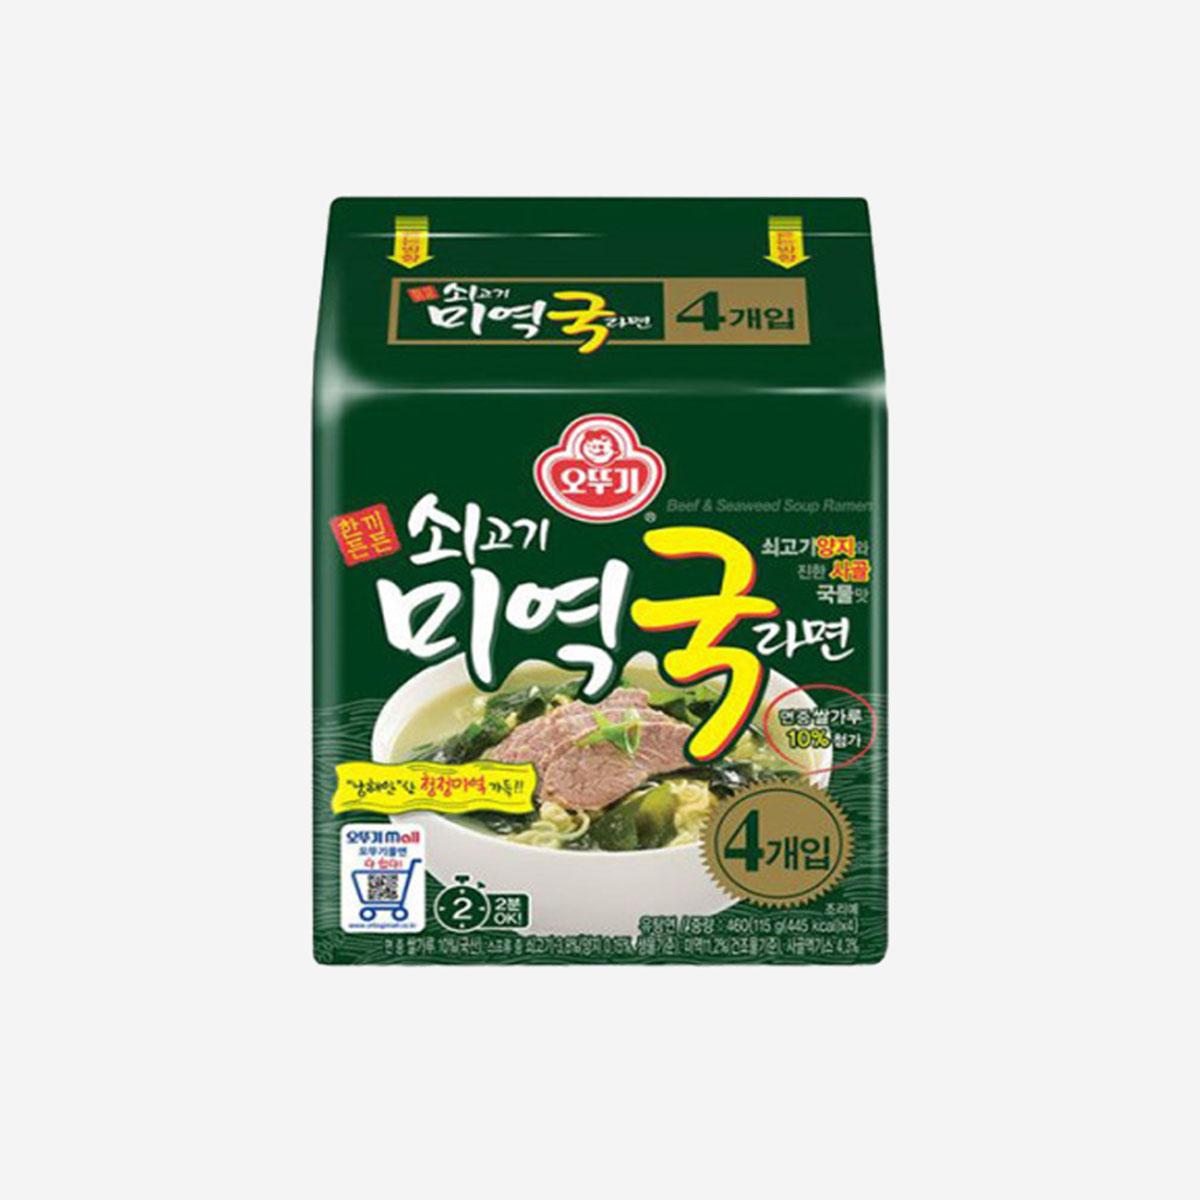 Beef Seaweed Soup Ramen (Pack of 4)